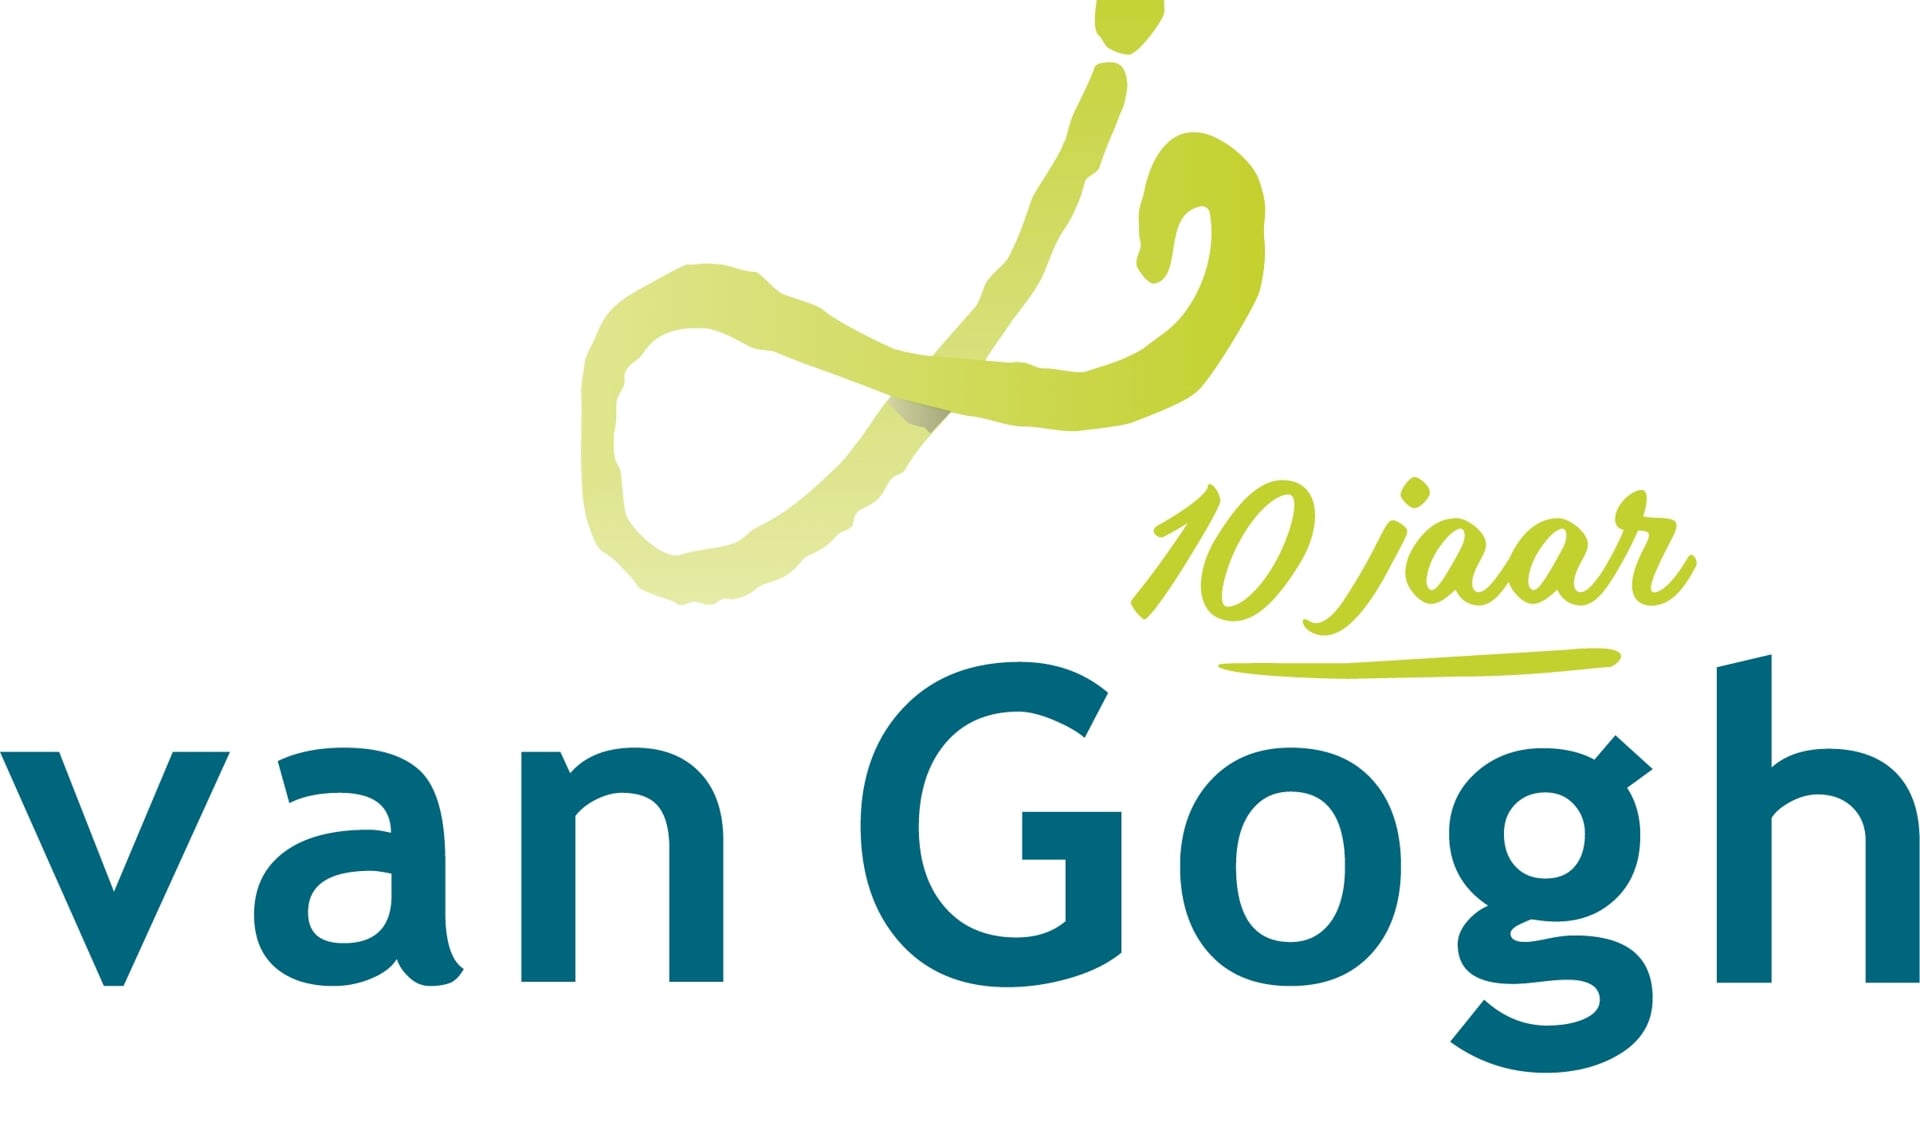 Van Gogh notarissen & adviseurs bestaat in 2019 10 jaar.